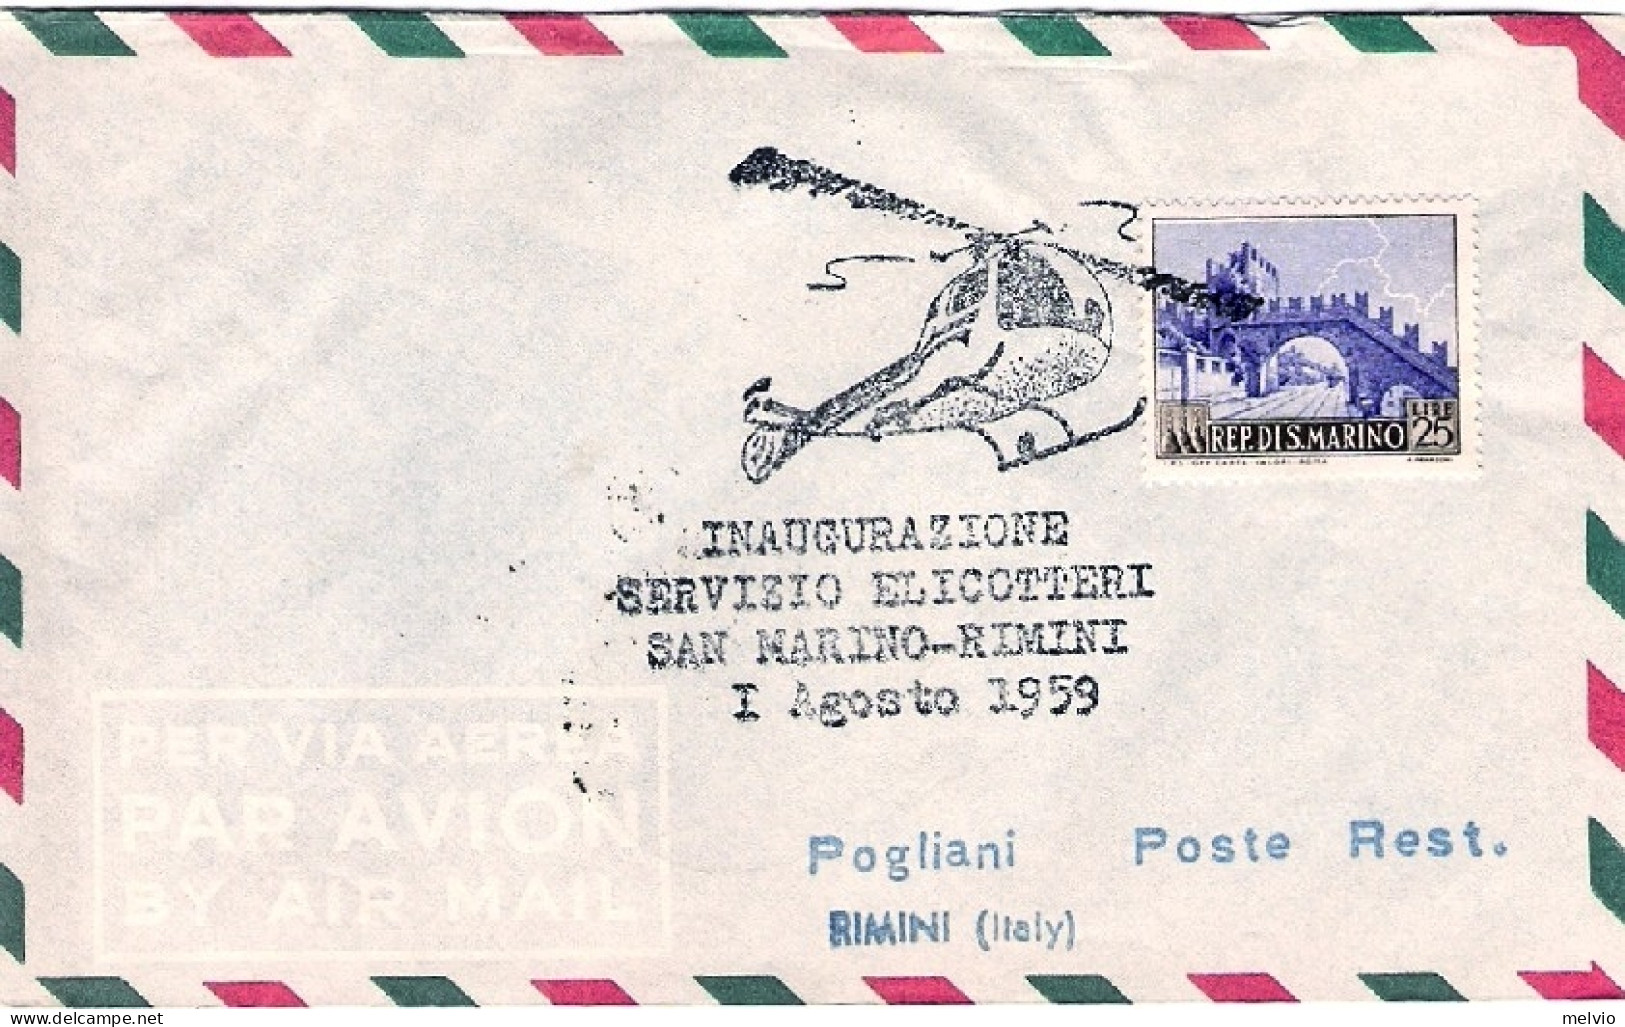 San Marino-1959 Bollo Inaugurazione Servizio Elicotteri San Marino-Rimini 1 Agos - Poste Aérienne